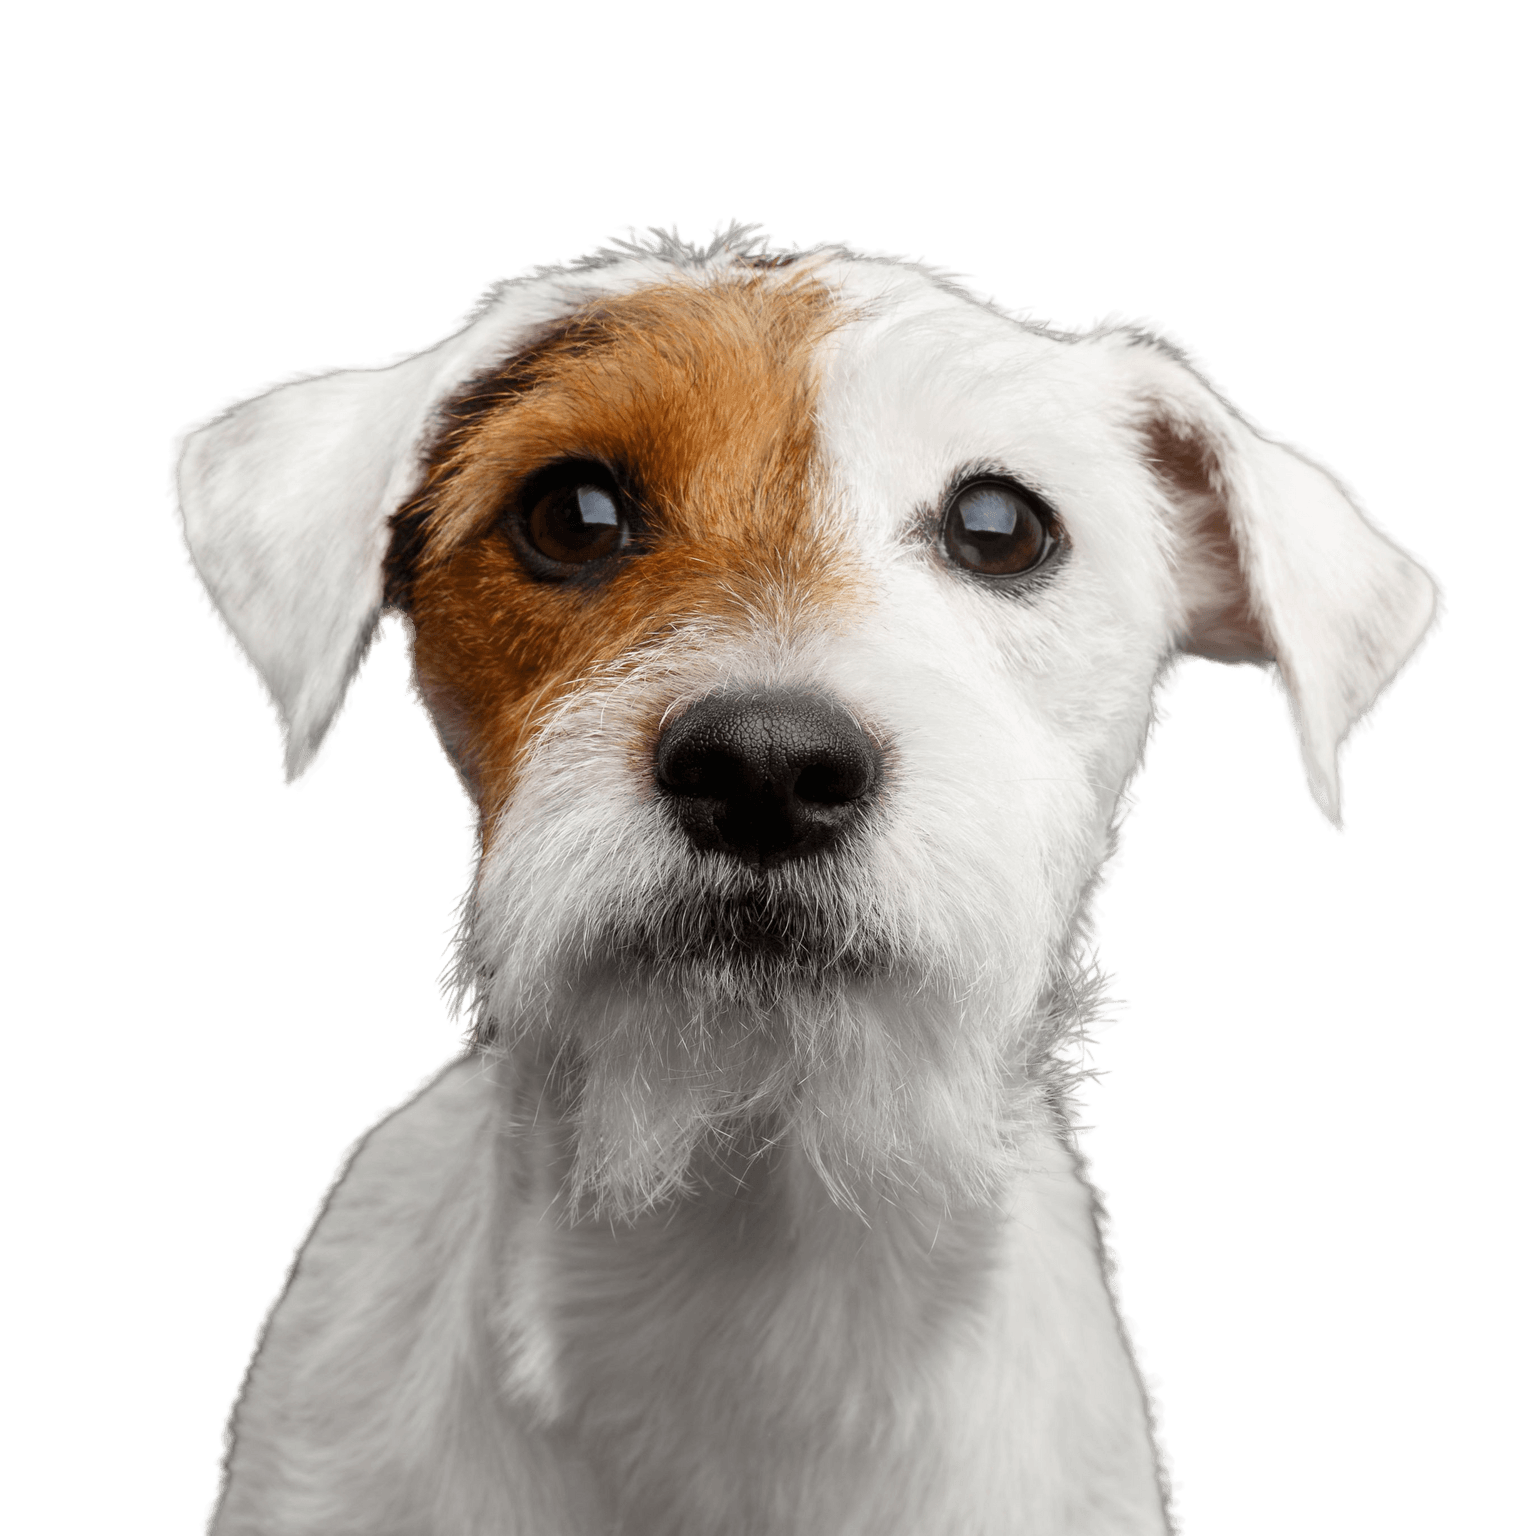 perro, mamífero, vertebrado, raza de perro, Canidae, Russell Terrier, perro de compañía, carnívoro, Parson Russell Terrier pelaje áspero, cachorro, pequeño perro blanco con ojo marrón